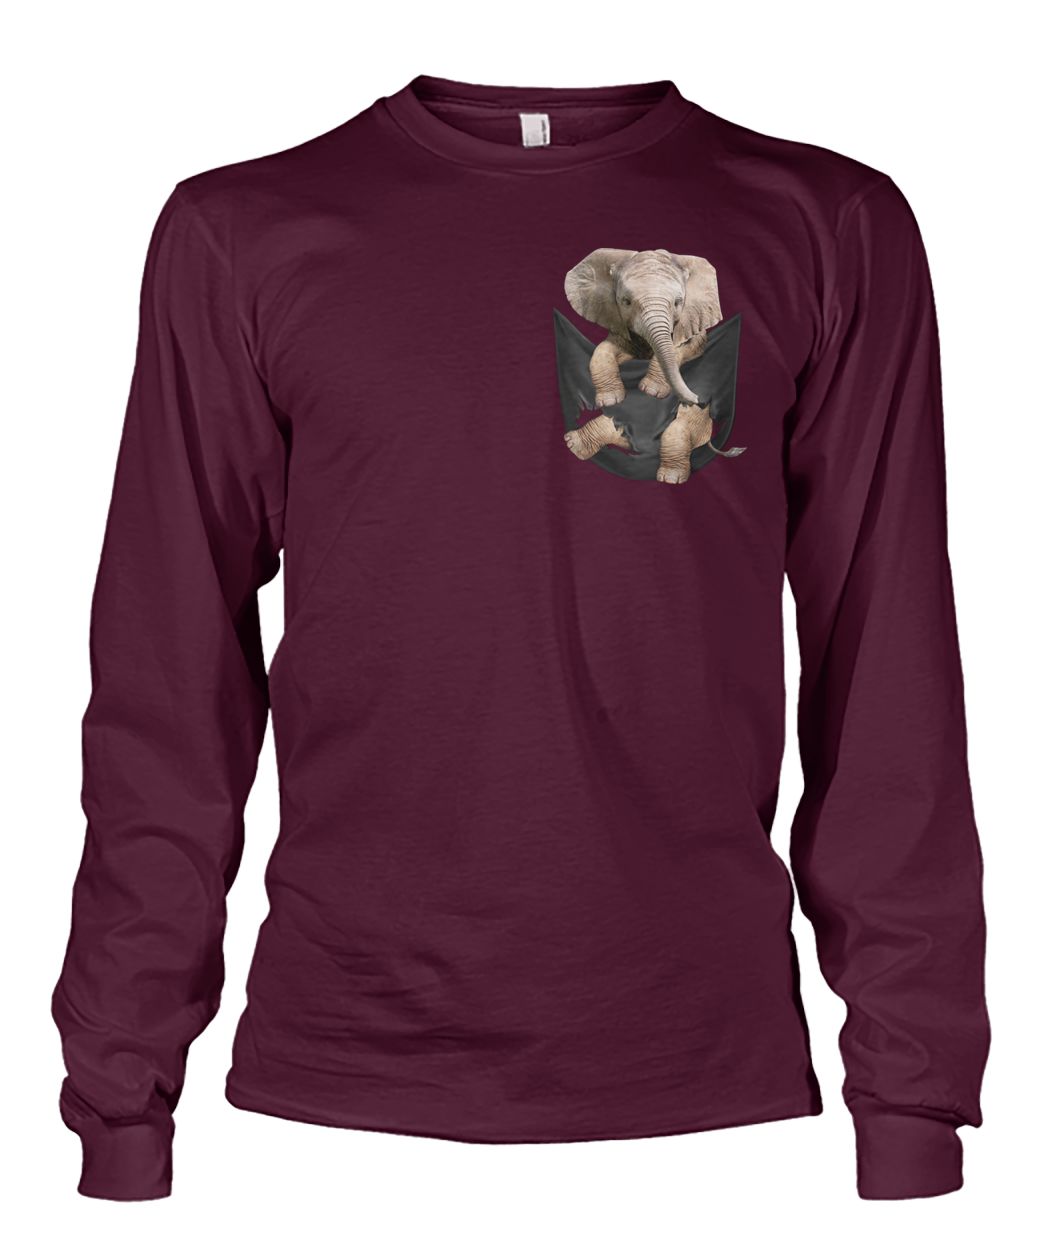 Elephant in pocket unisex long sleeve